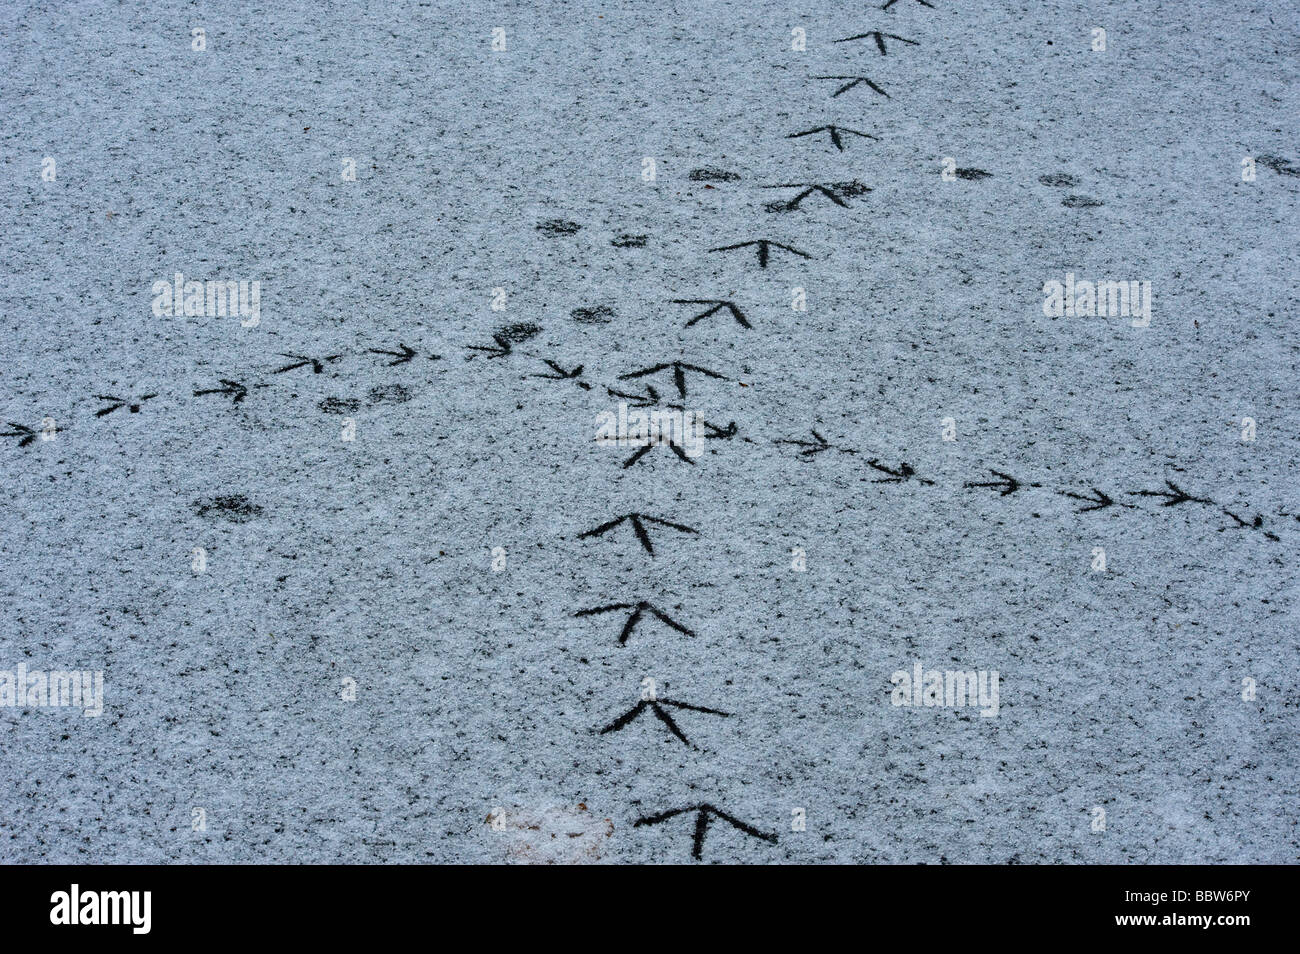 Crocevia dove wildfowl vie incontrato sulla coperta di neve ghiaccio Foto Stock